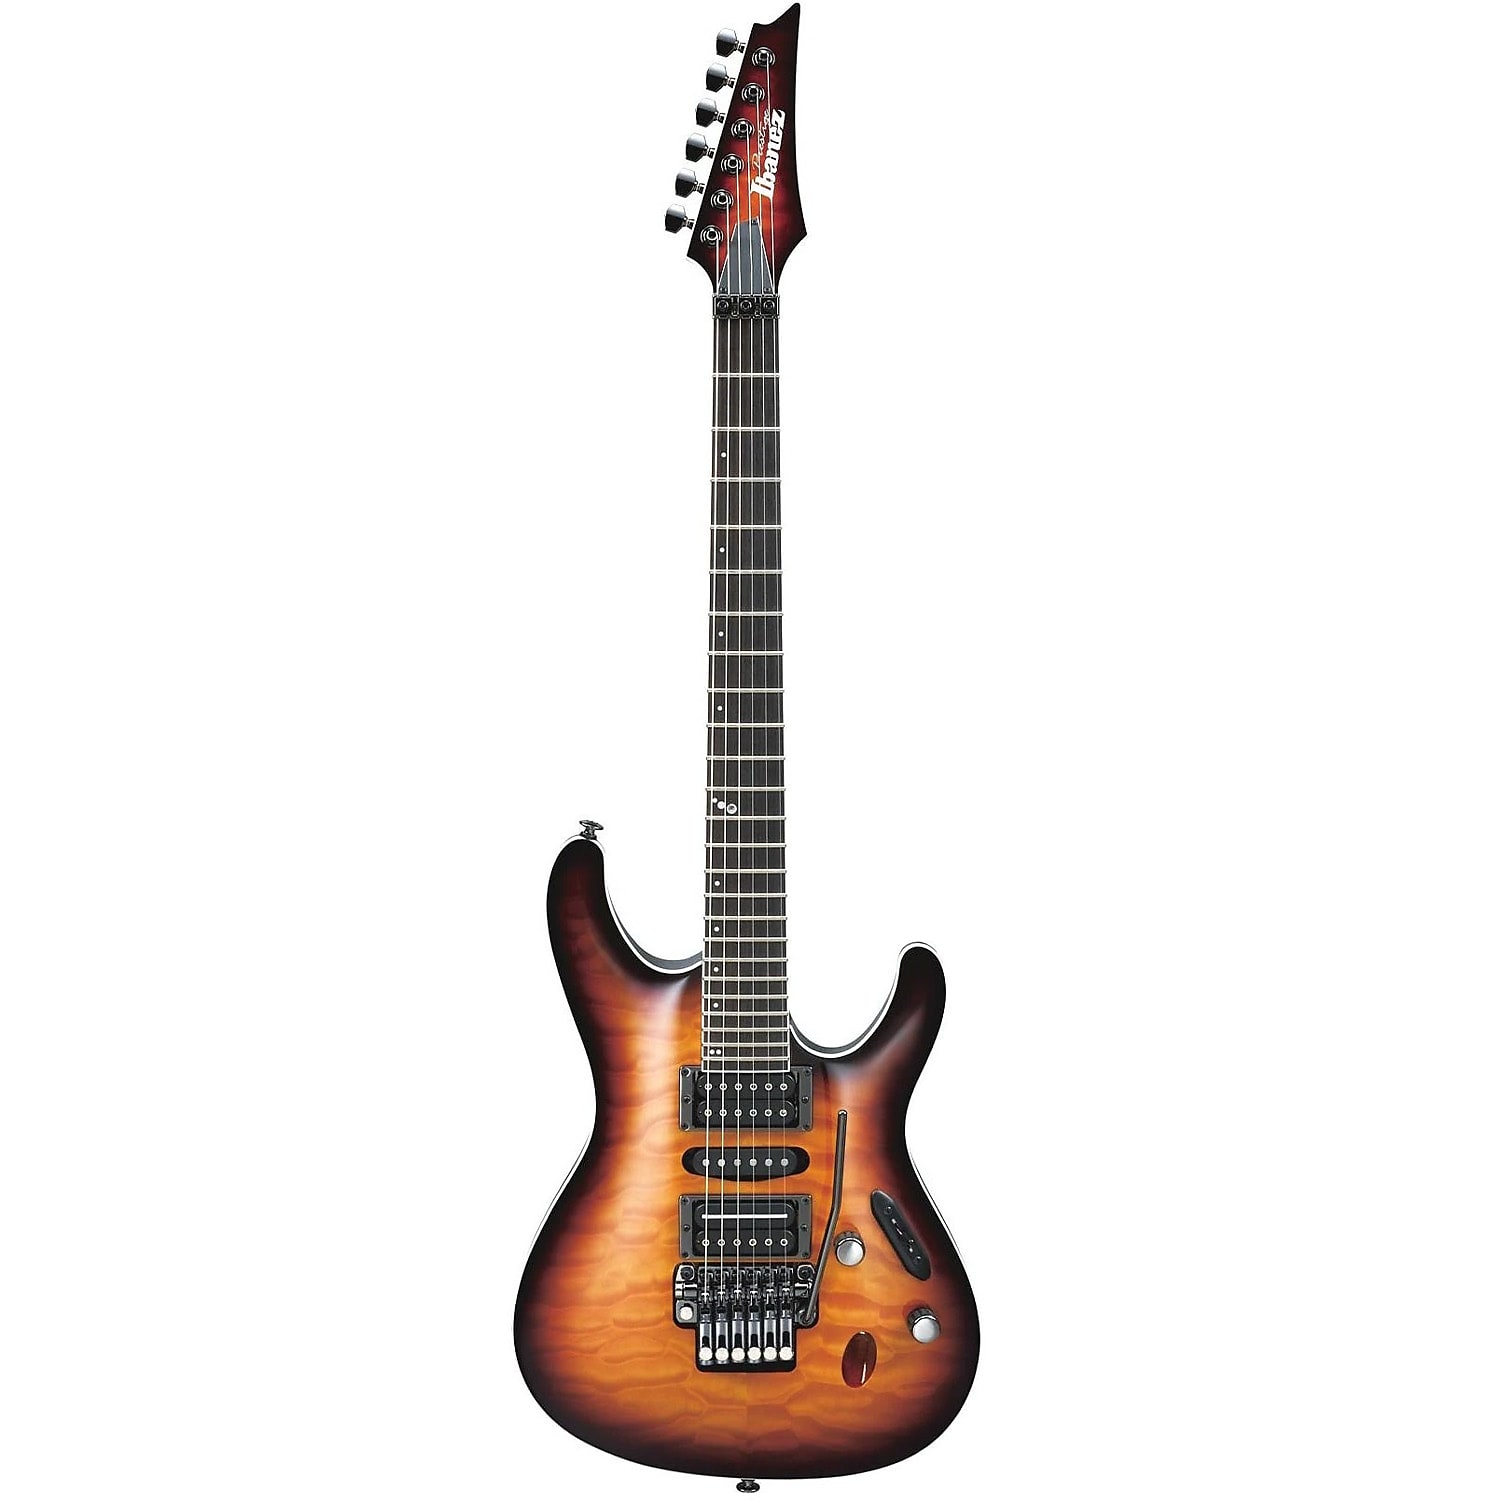 Guitar Ibanez Sシリーズ (S5470) 国産Prestageこちらの商品は在庫ありますか